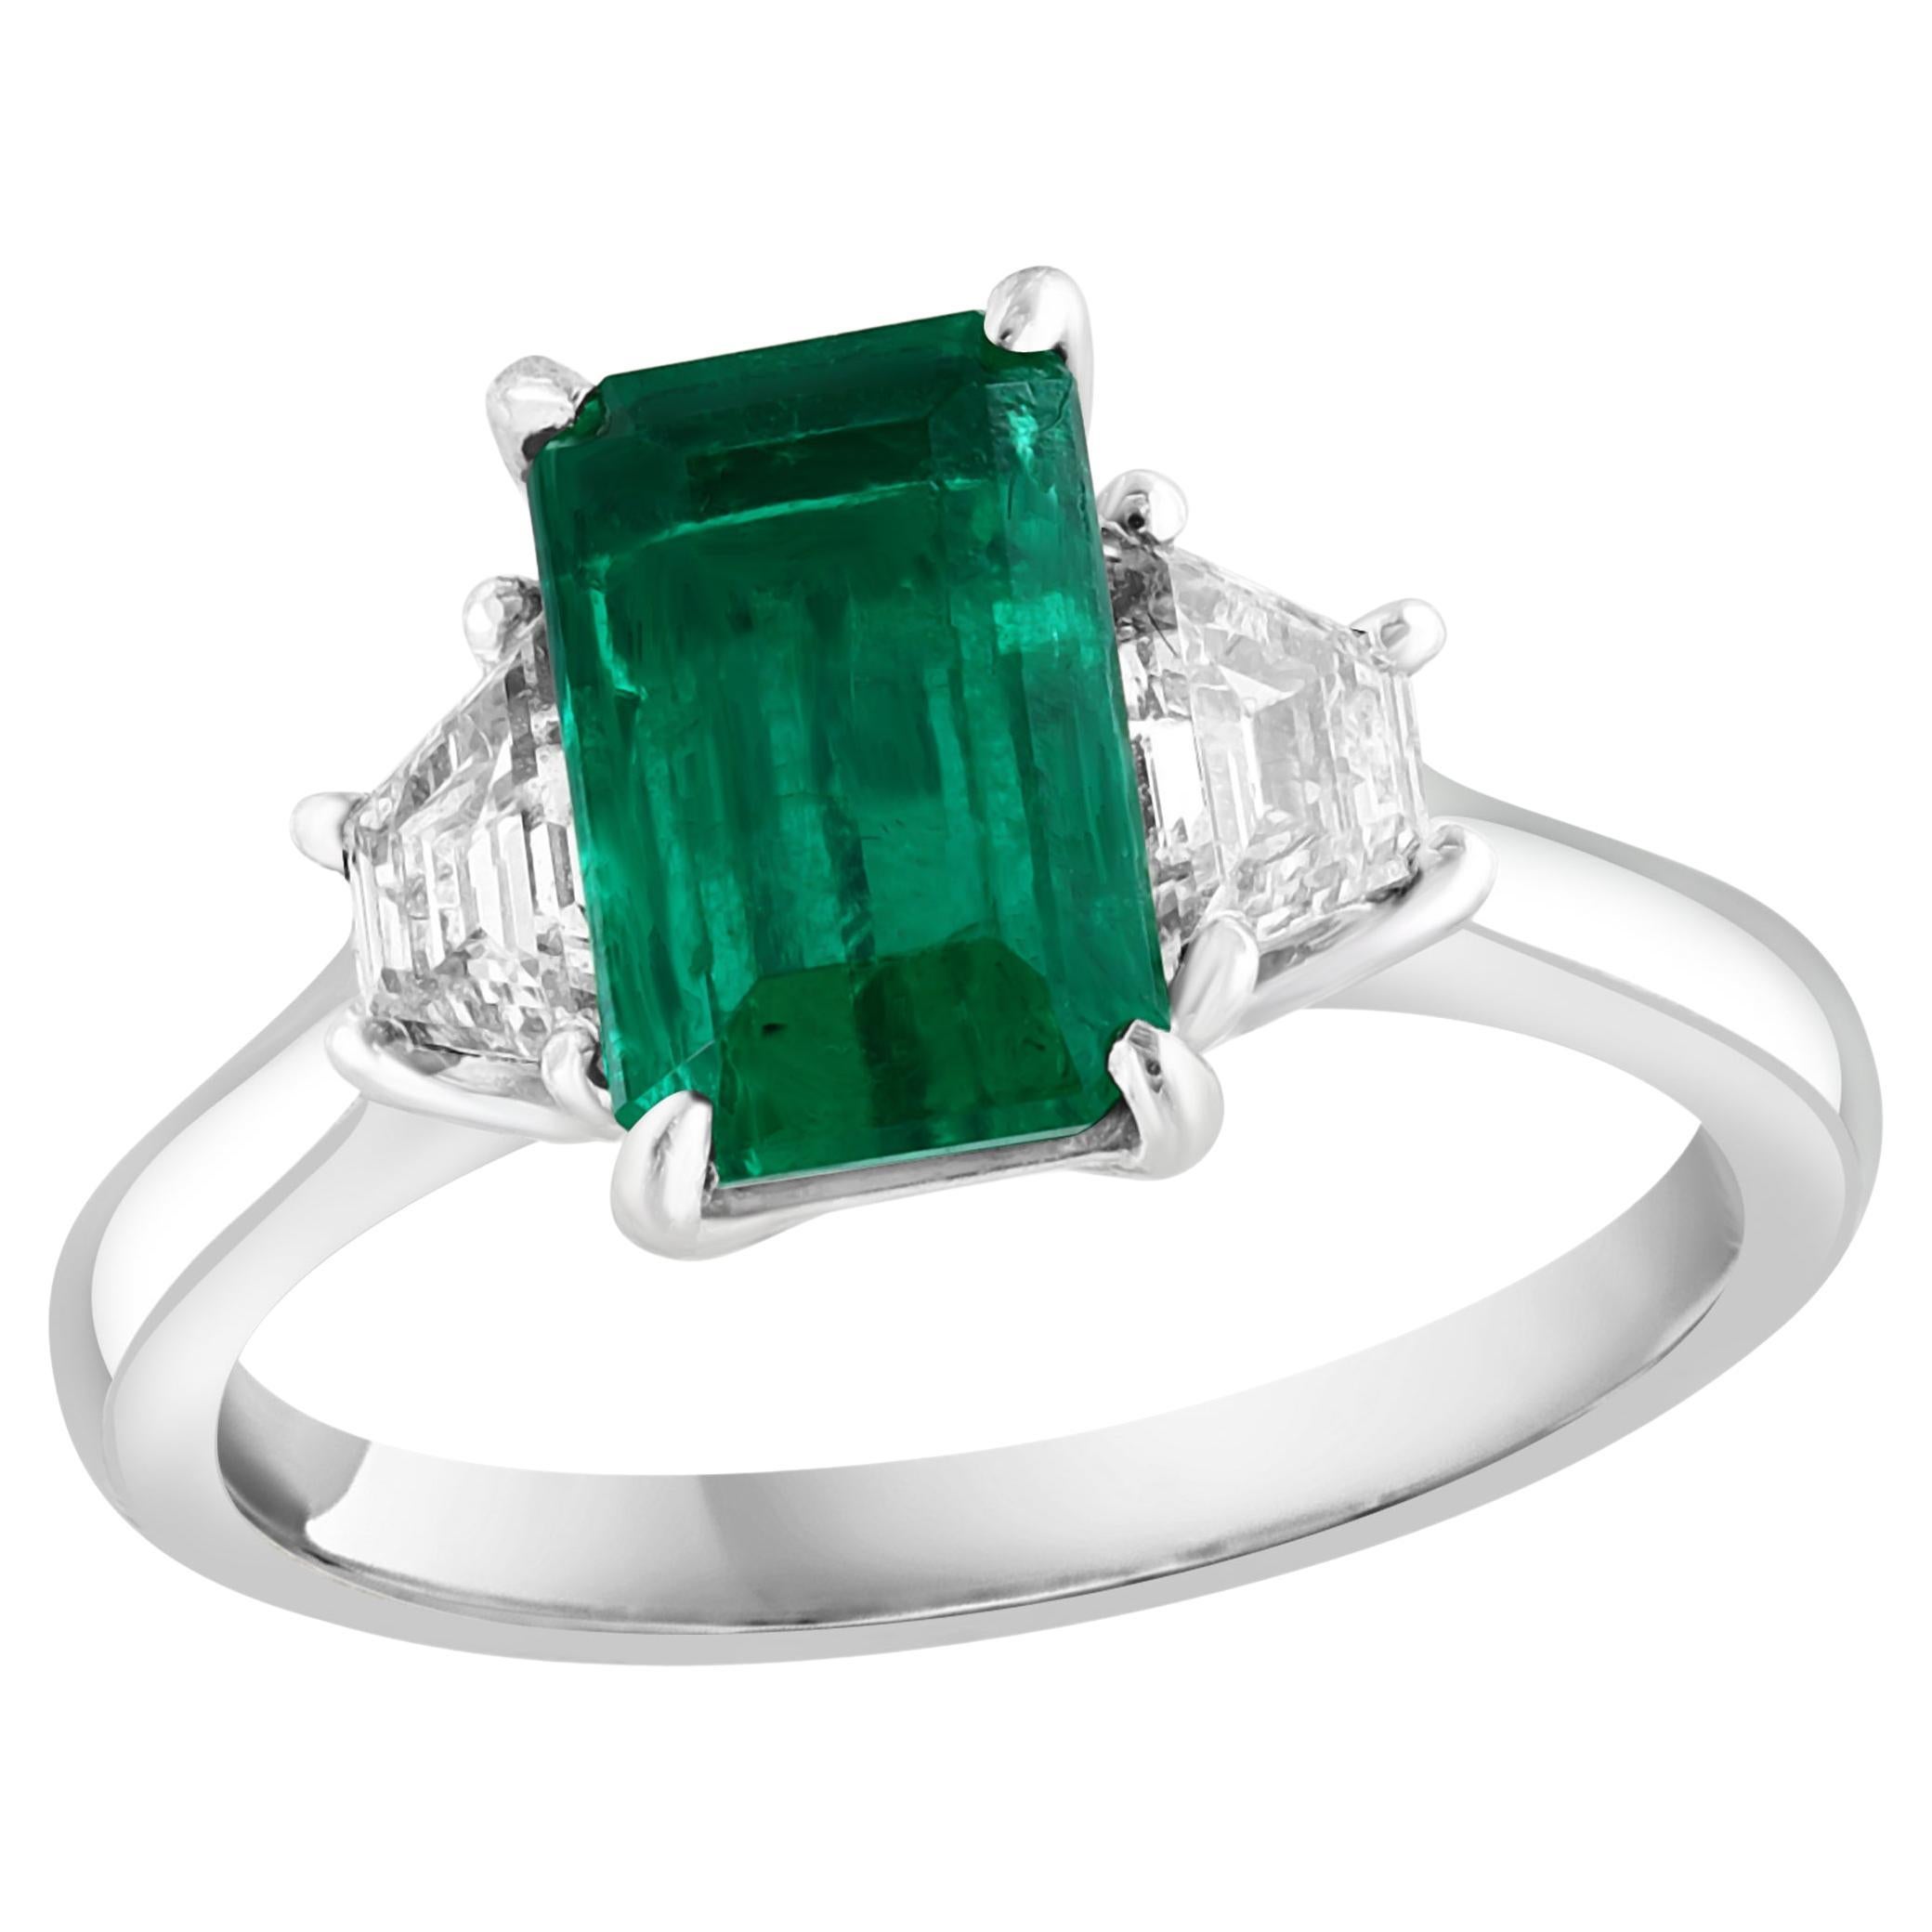 Certified 2.08 Carat Emerald Cut Emerald Diamond Ring in Platinum